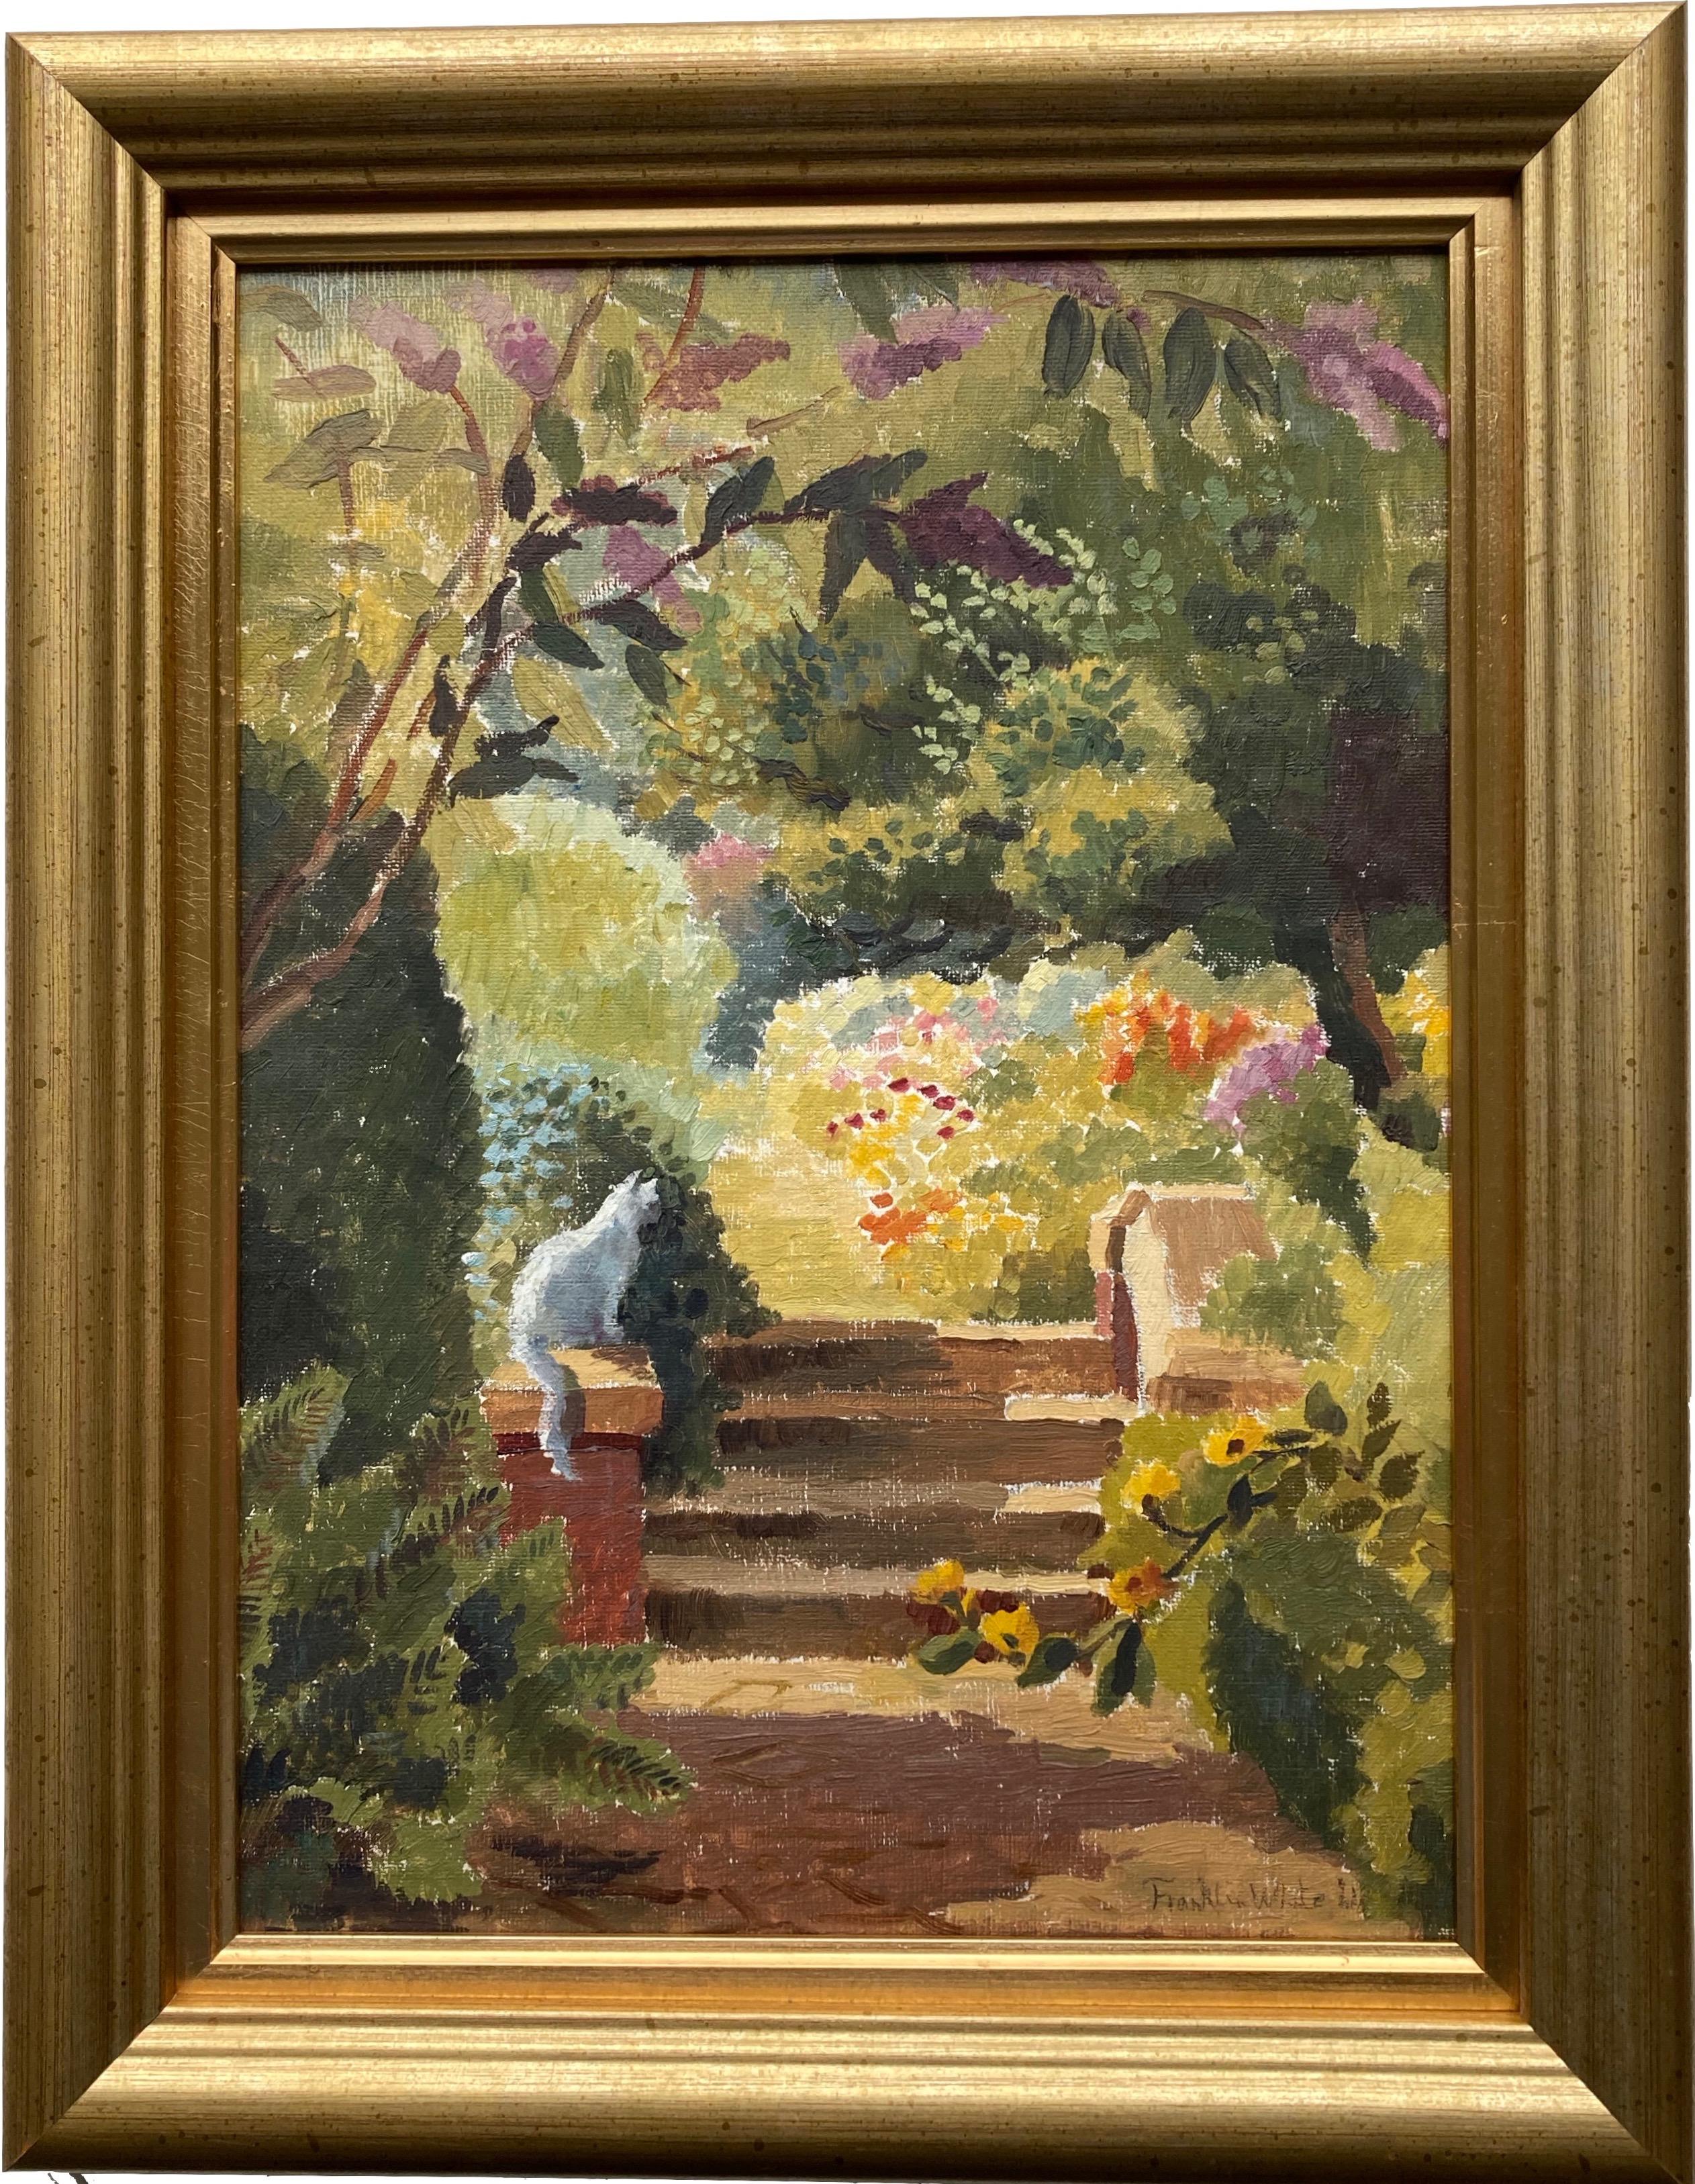 Franklin White, britische australische impressionistische Szene einer Katze auf einem Hof, Impressionismus